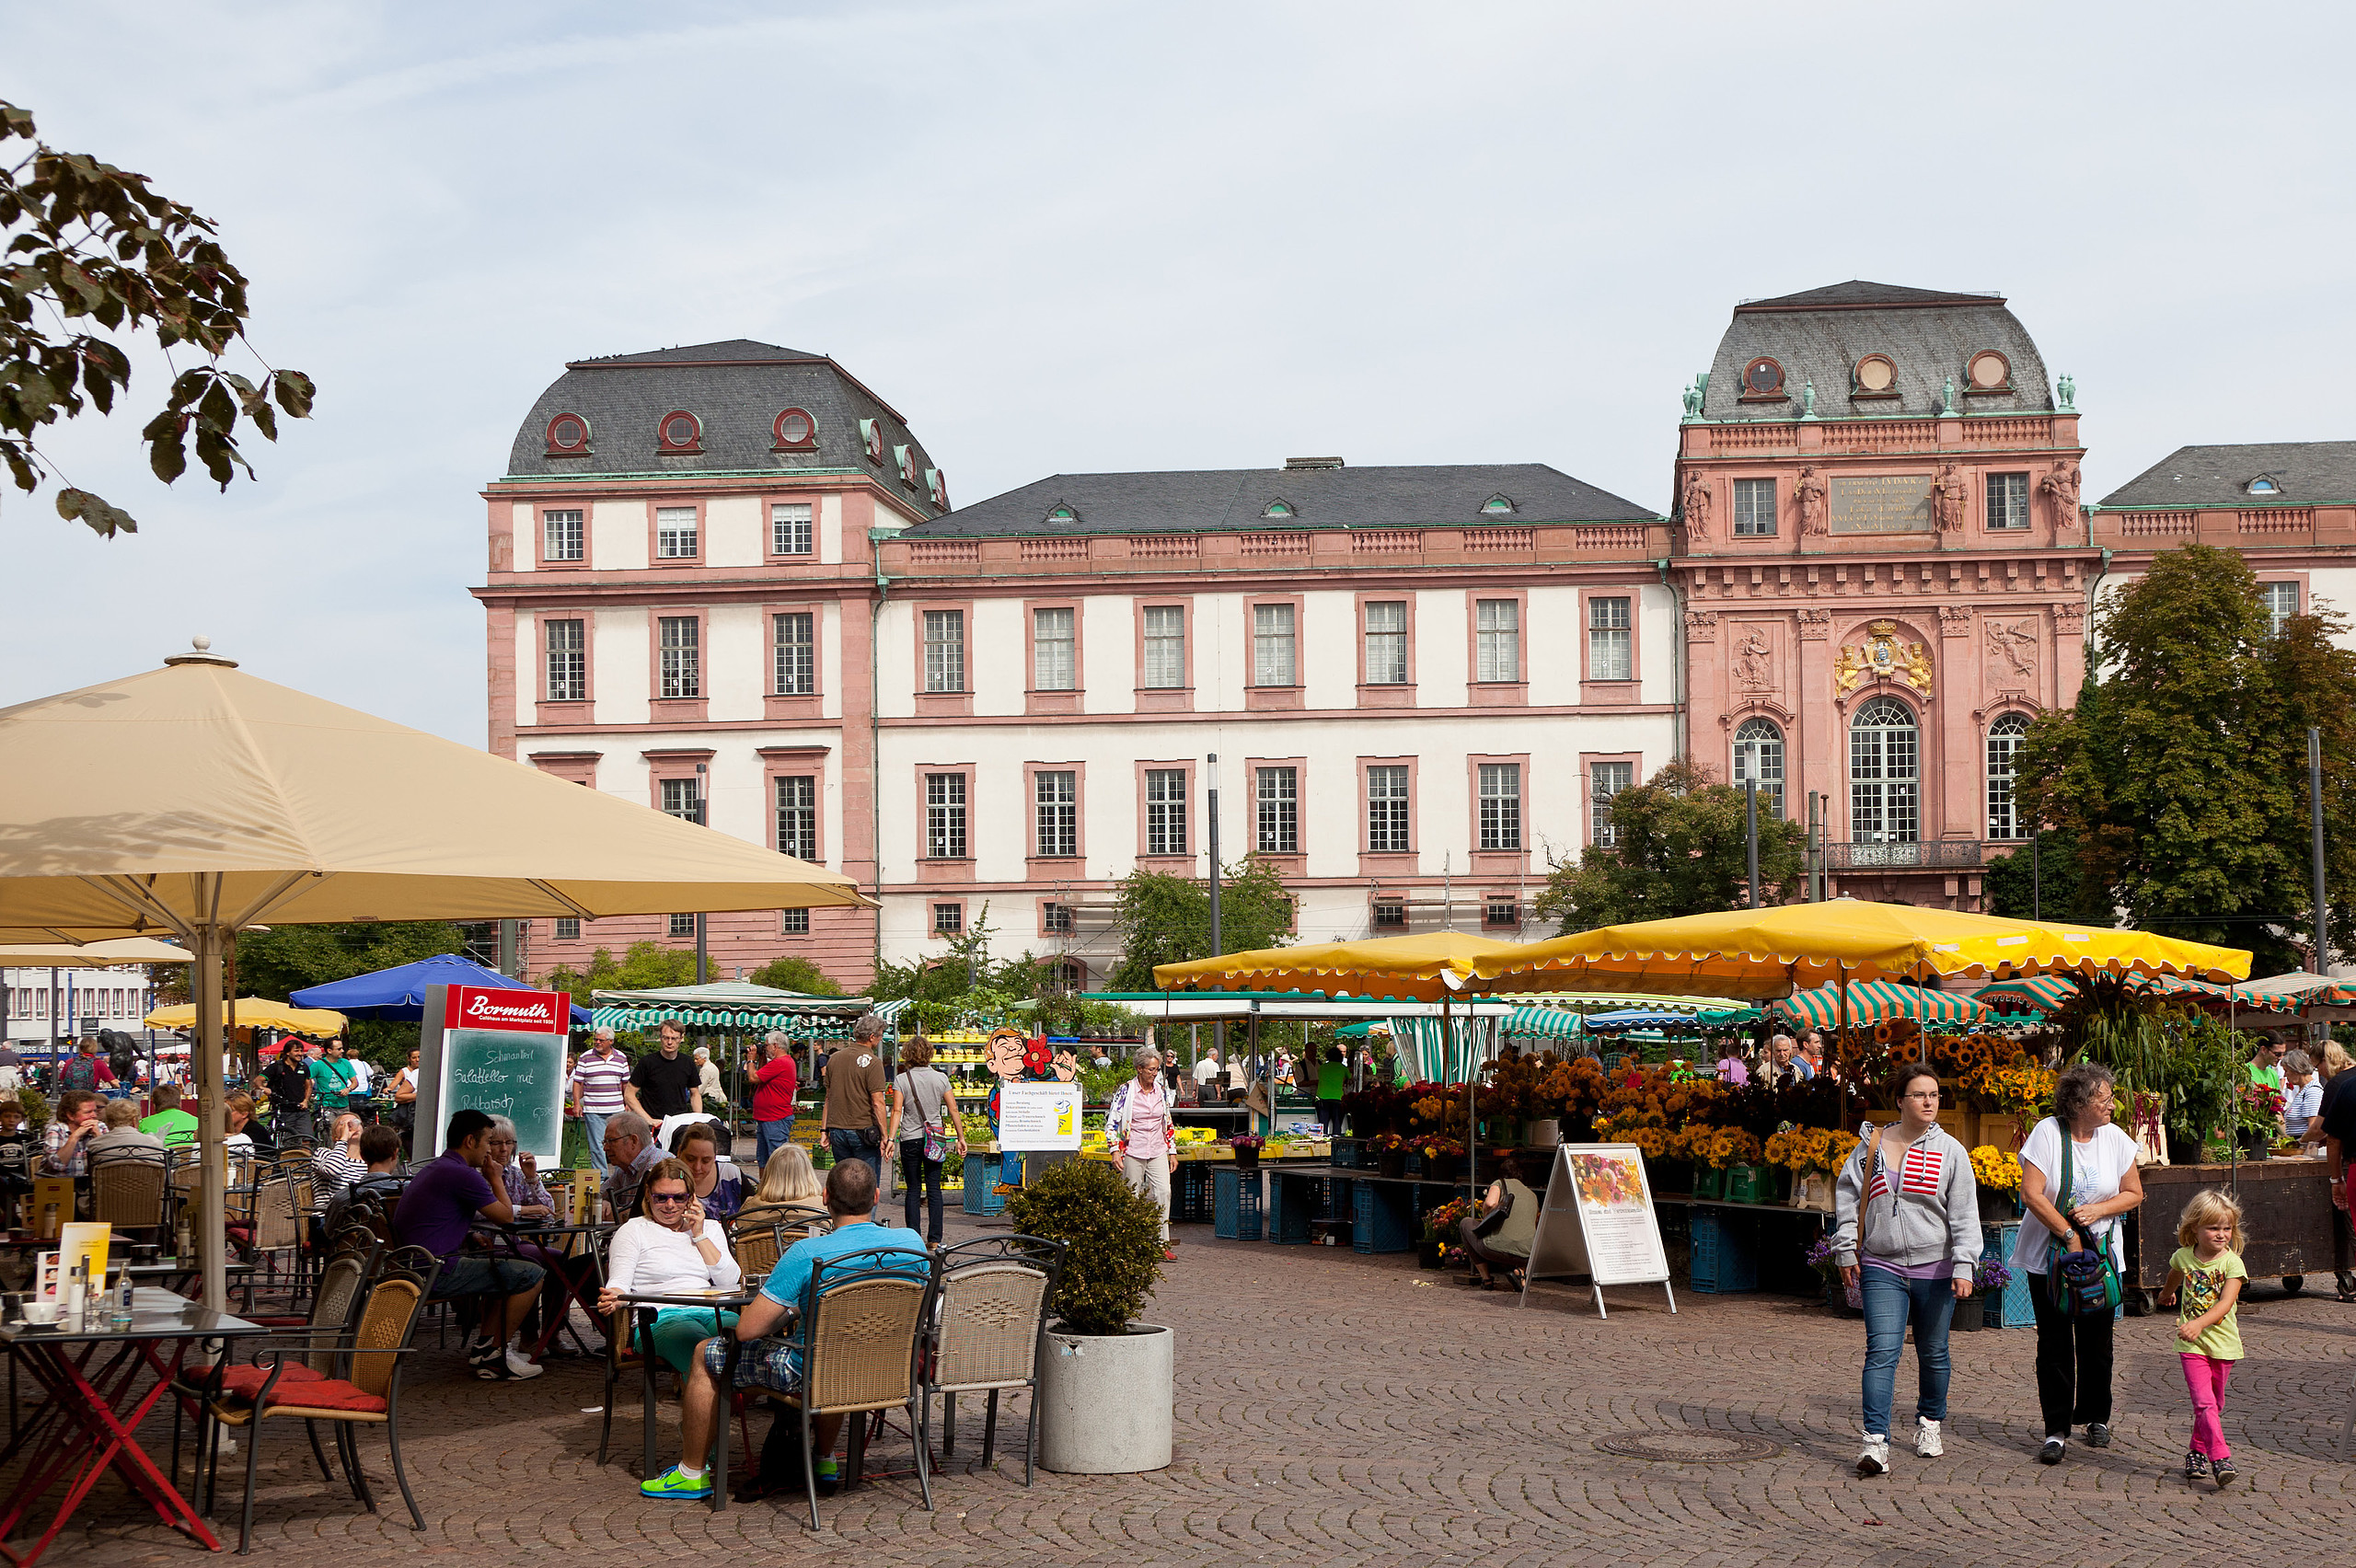 Market stalls at Darmstadt farmers' market